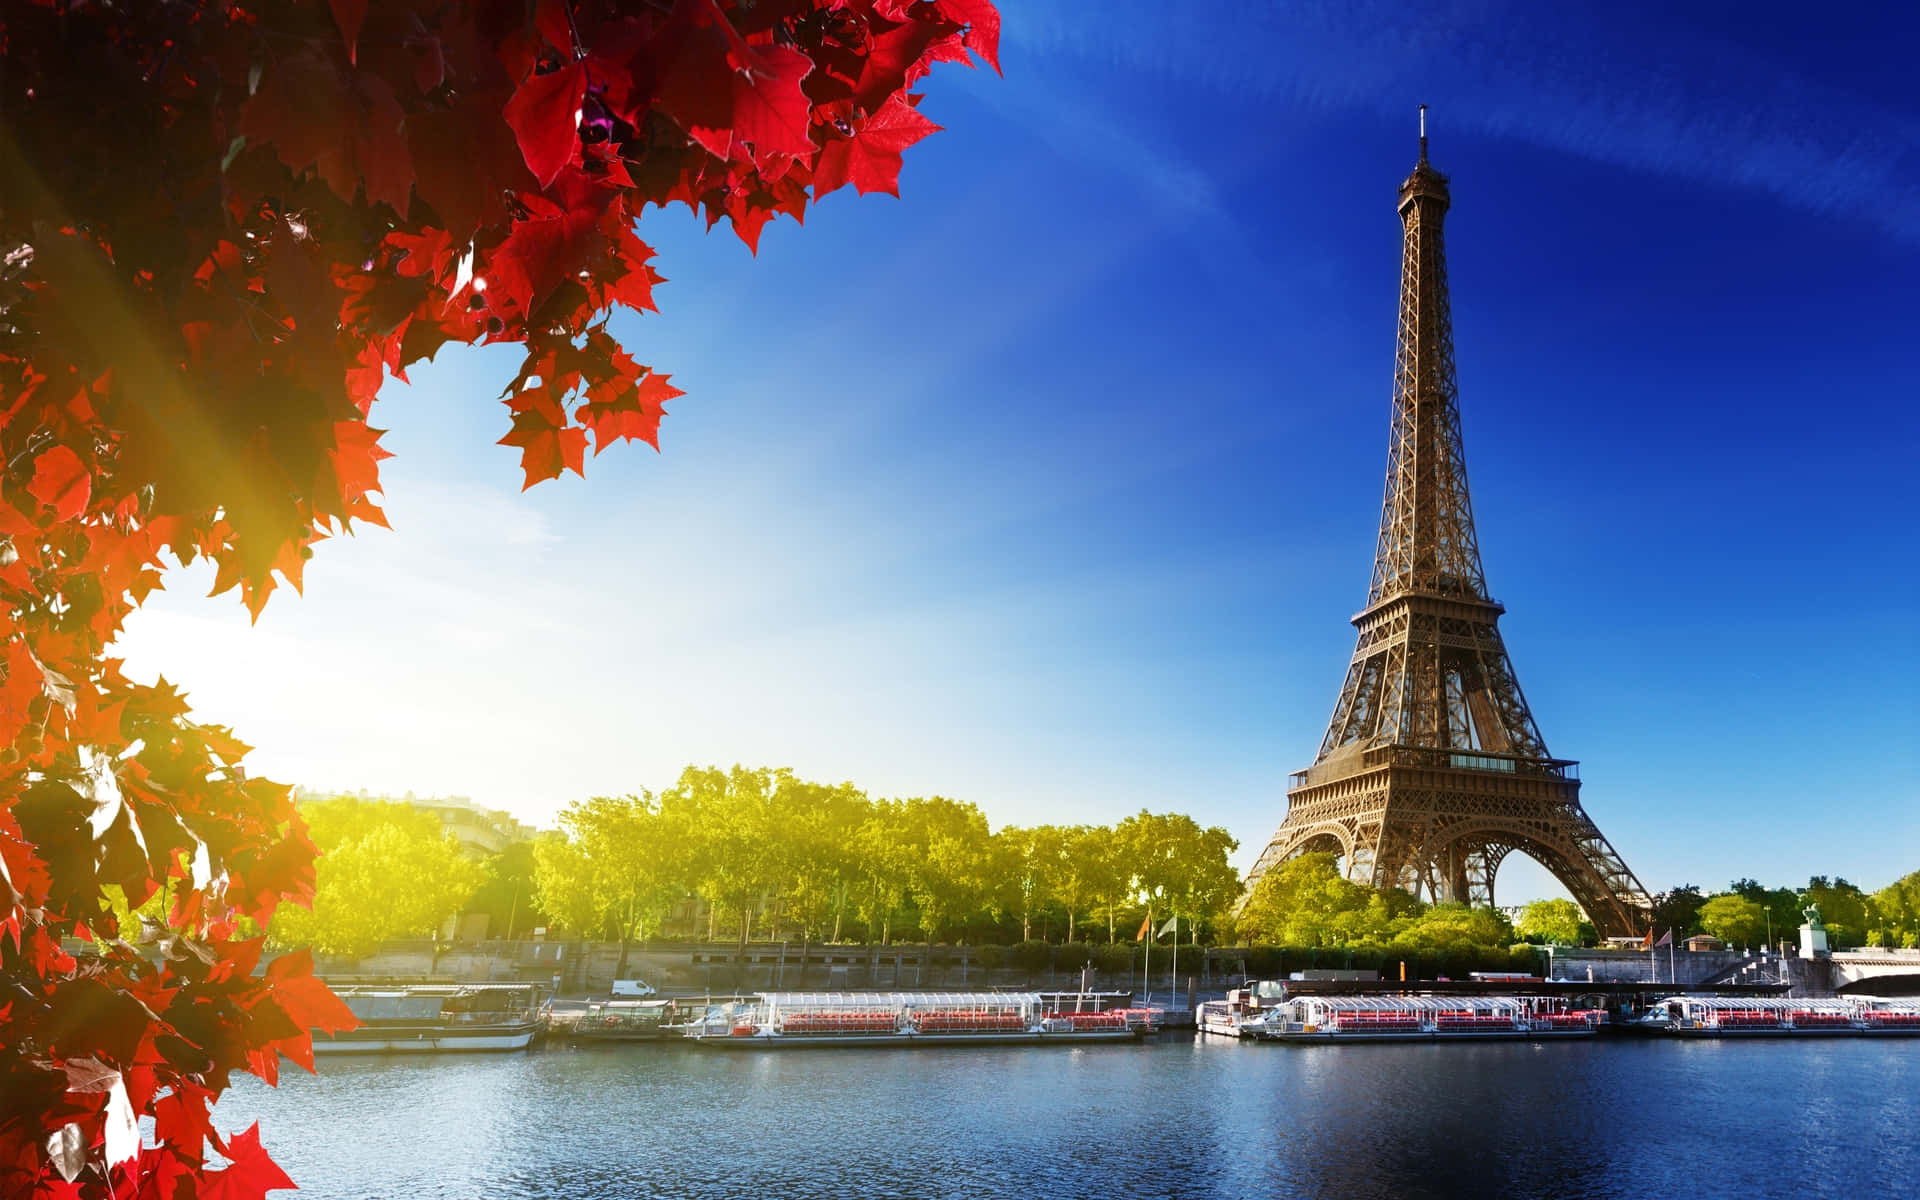 Denforbløffende Eiffeltårn, Der Står Højt Over Lysenes By, Paris, I Al Sin Majestæt.